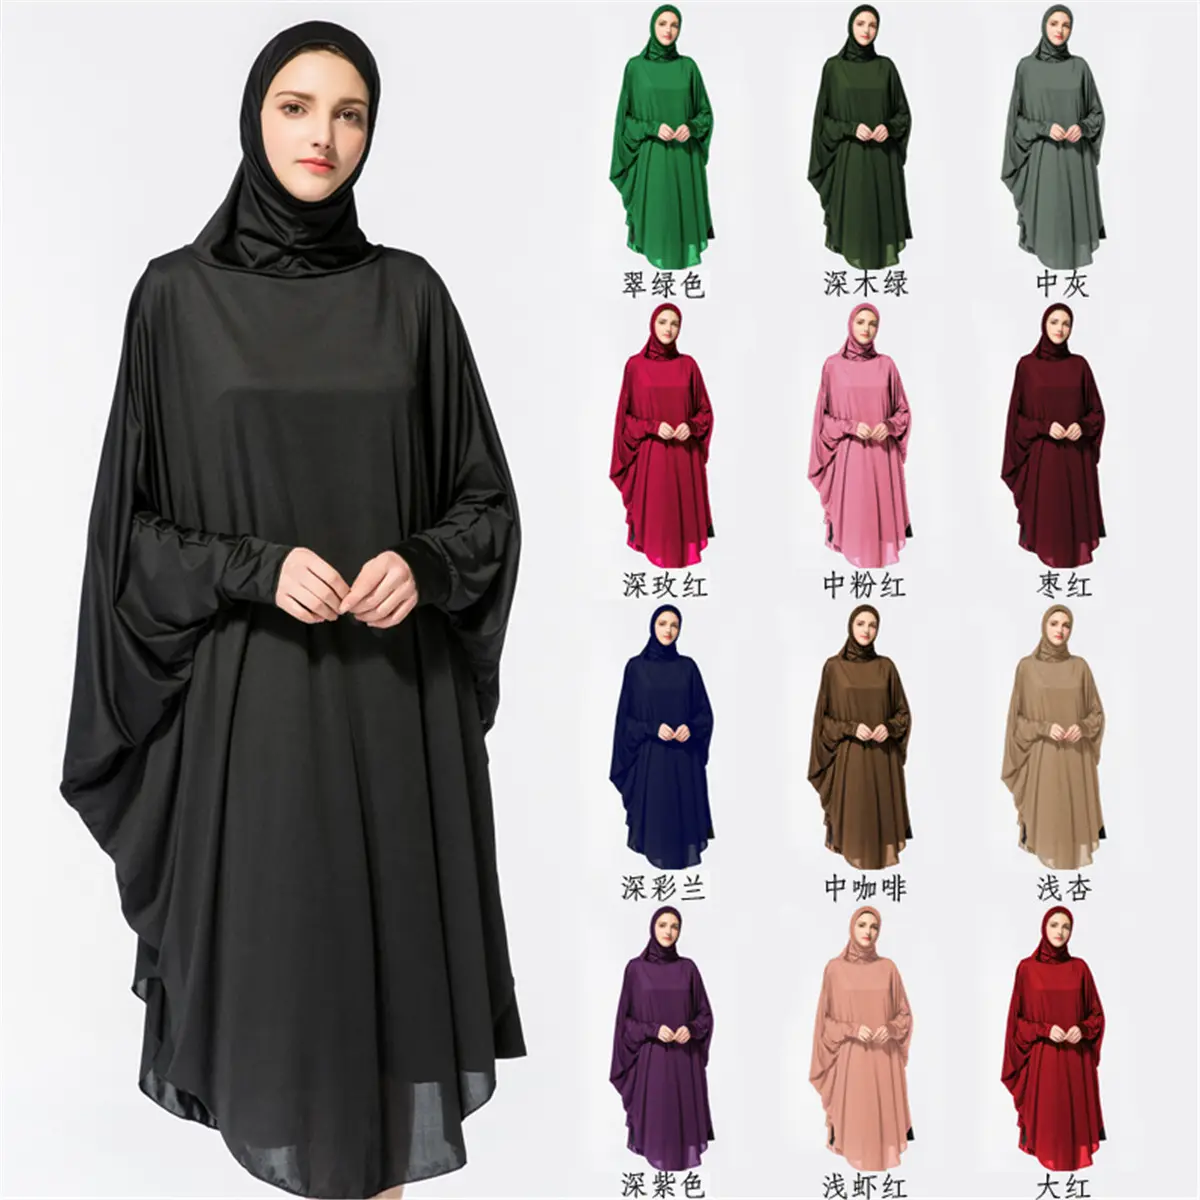 Trang Phục Hồi Giáo Che Toàn Bộ Co Giãn Mới Áo Choàng Nữ Hồi Giáo Màu Trơn Một Mảnh Jilbab Hồi Giáo Abaya Áo Choàng Nữ Khimar Dành Cho Phụ Nữ Thobe